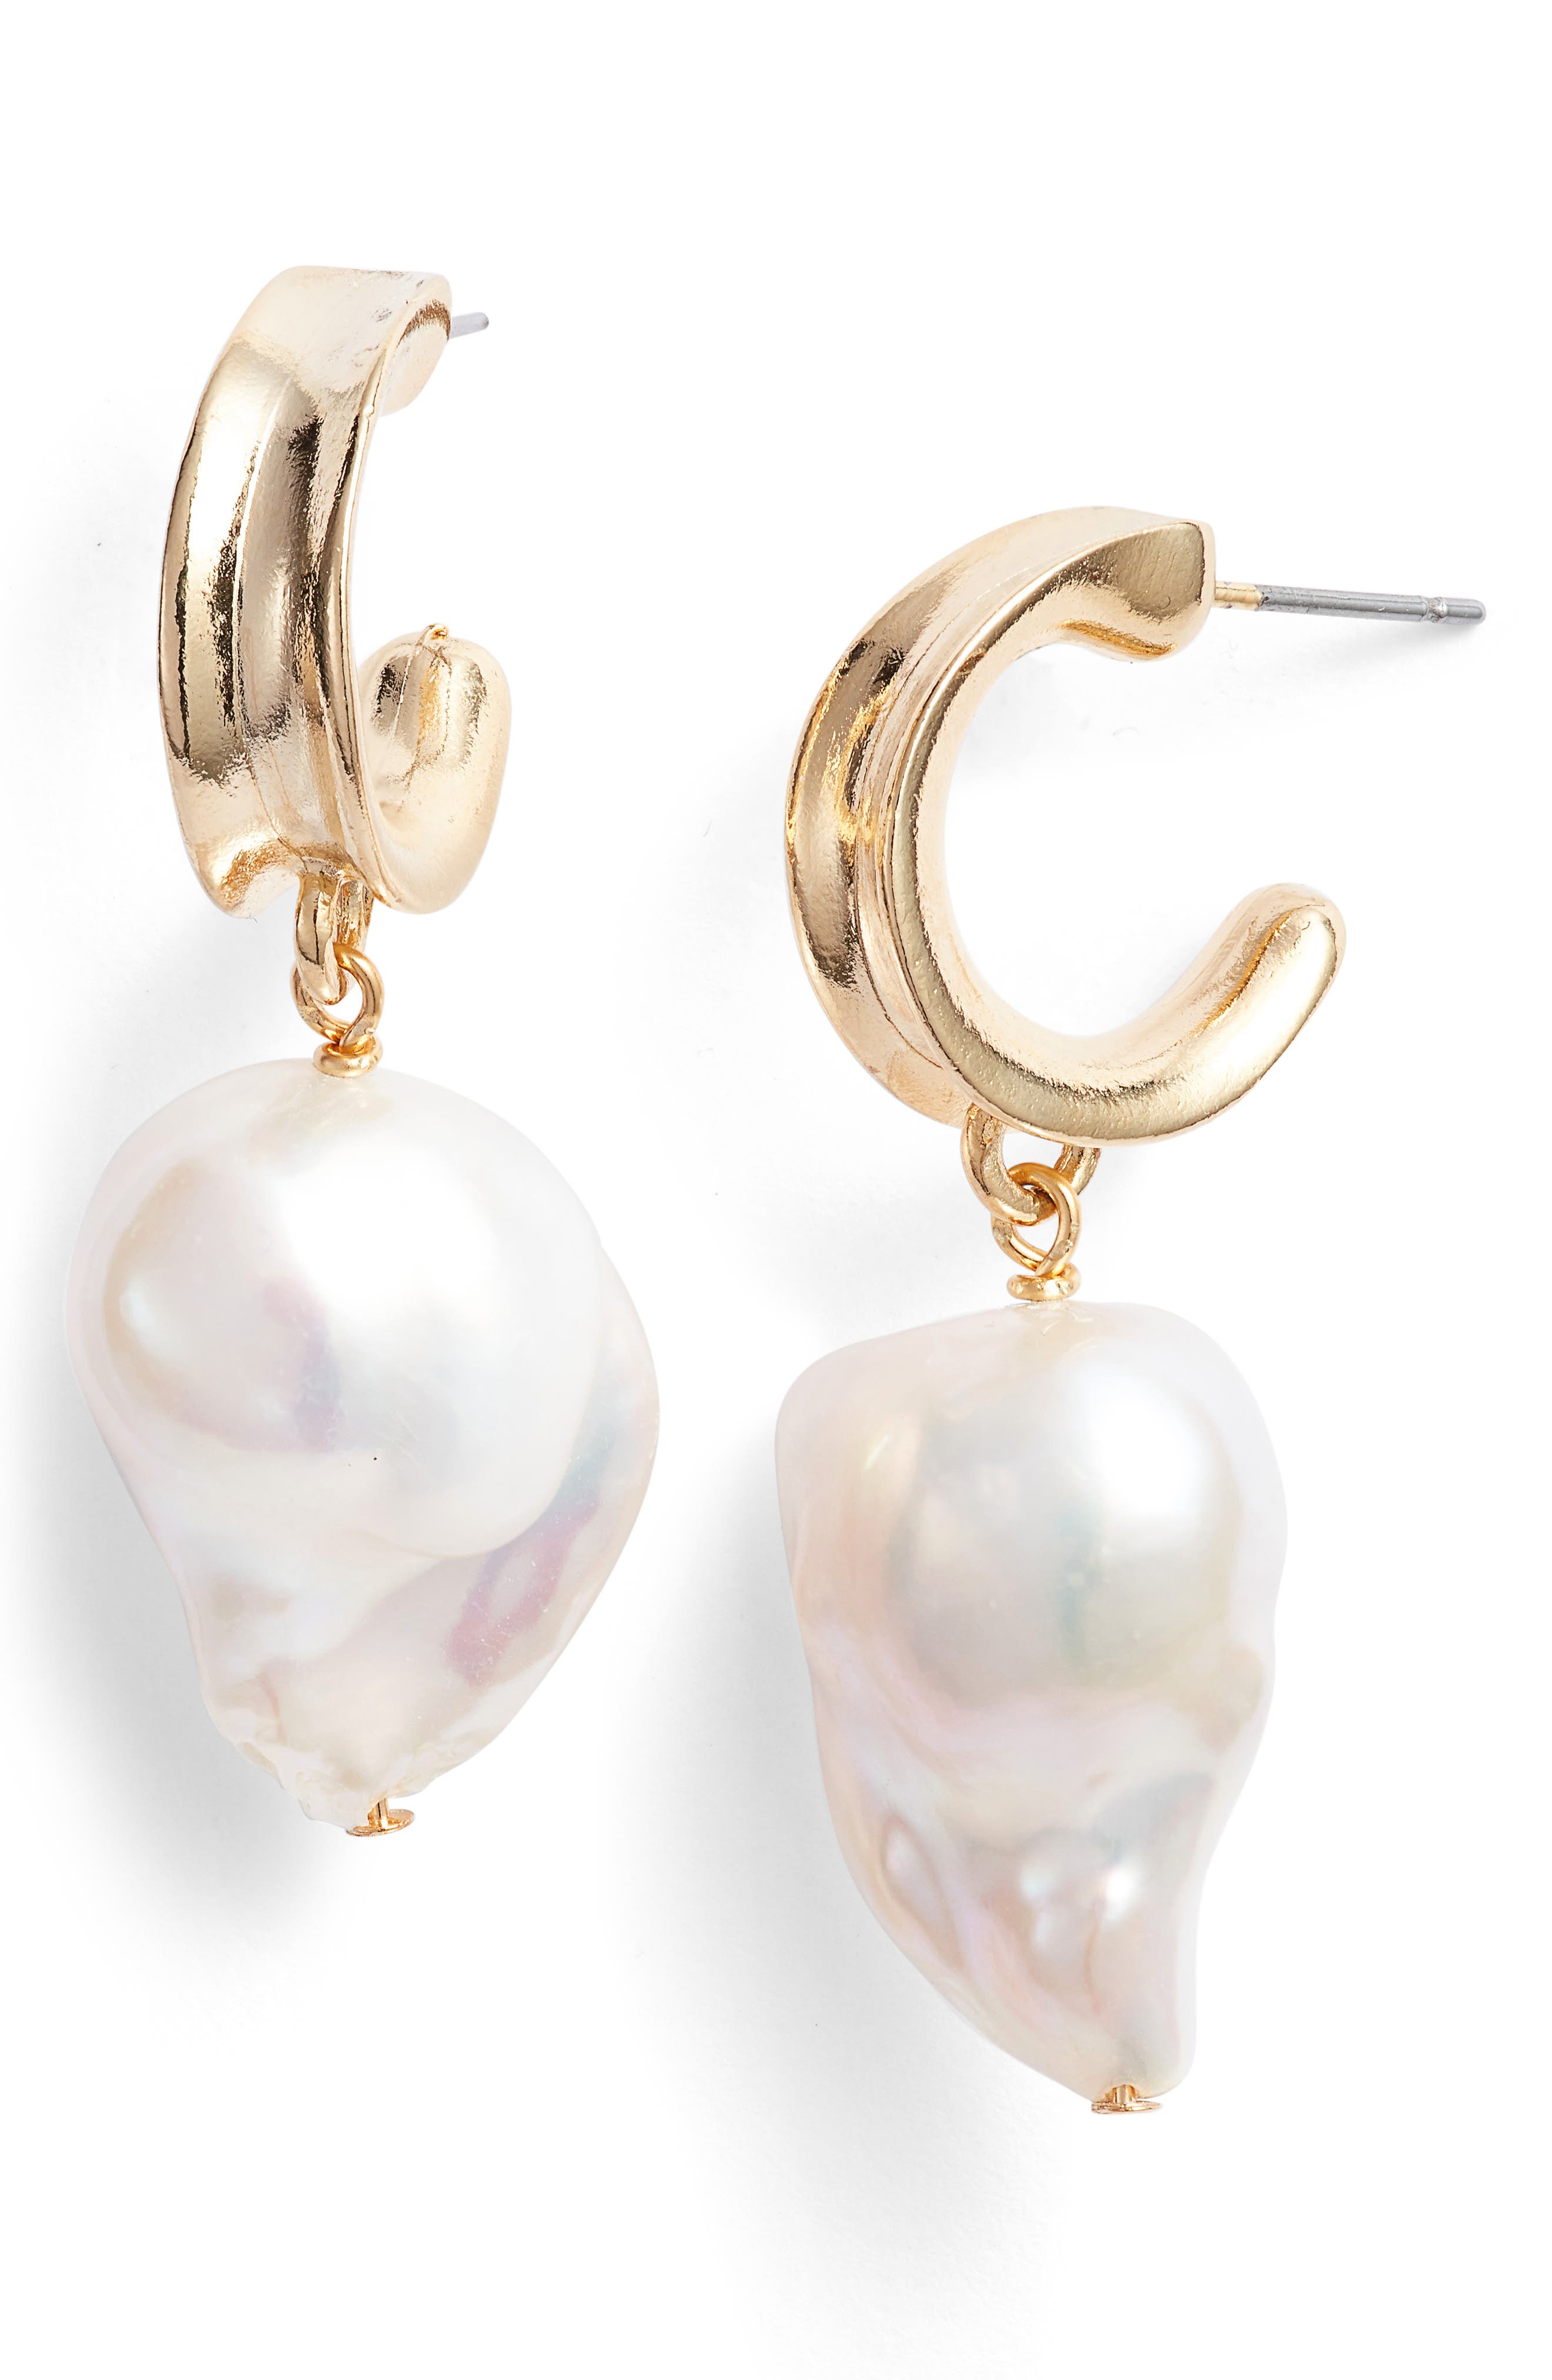 BIKO Barroco Baroque Pearl Hoop Earrings in Gold at Nordstrom